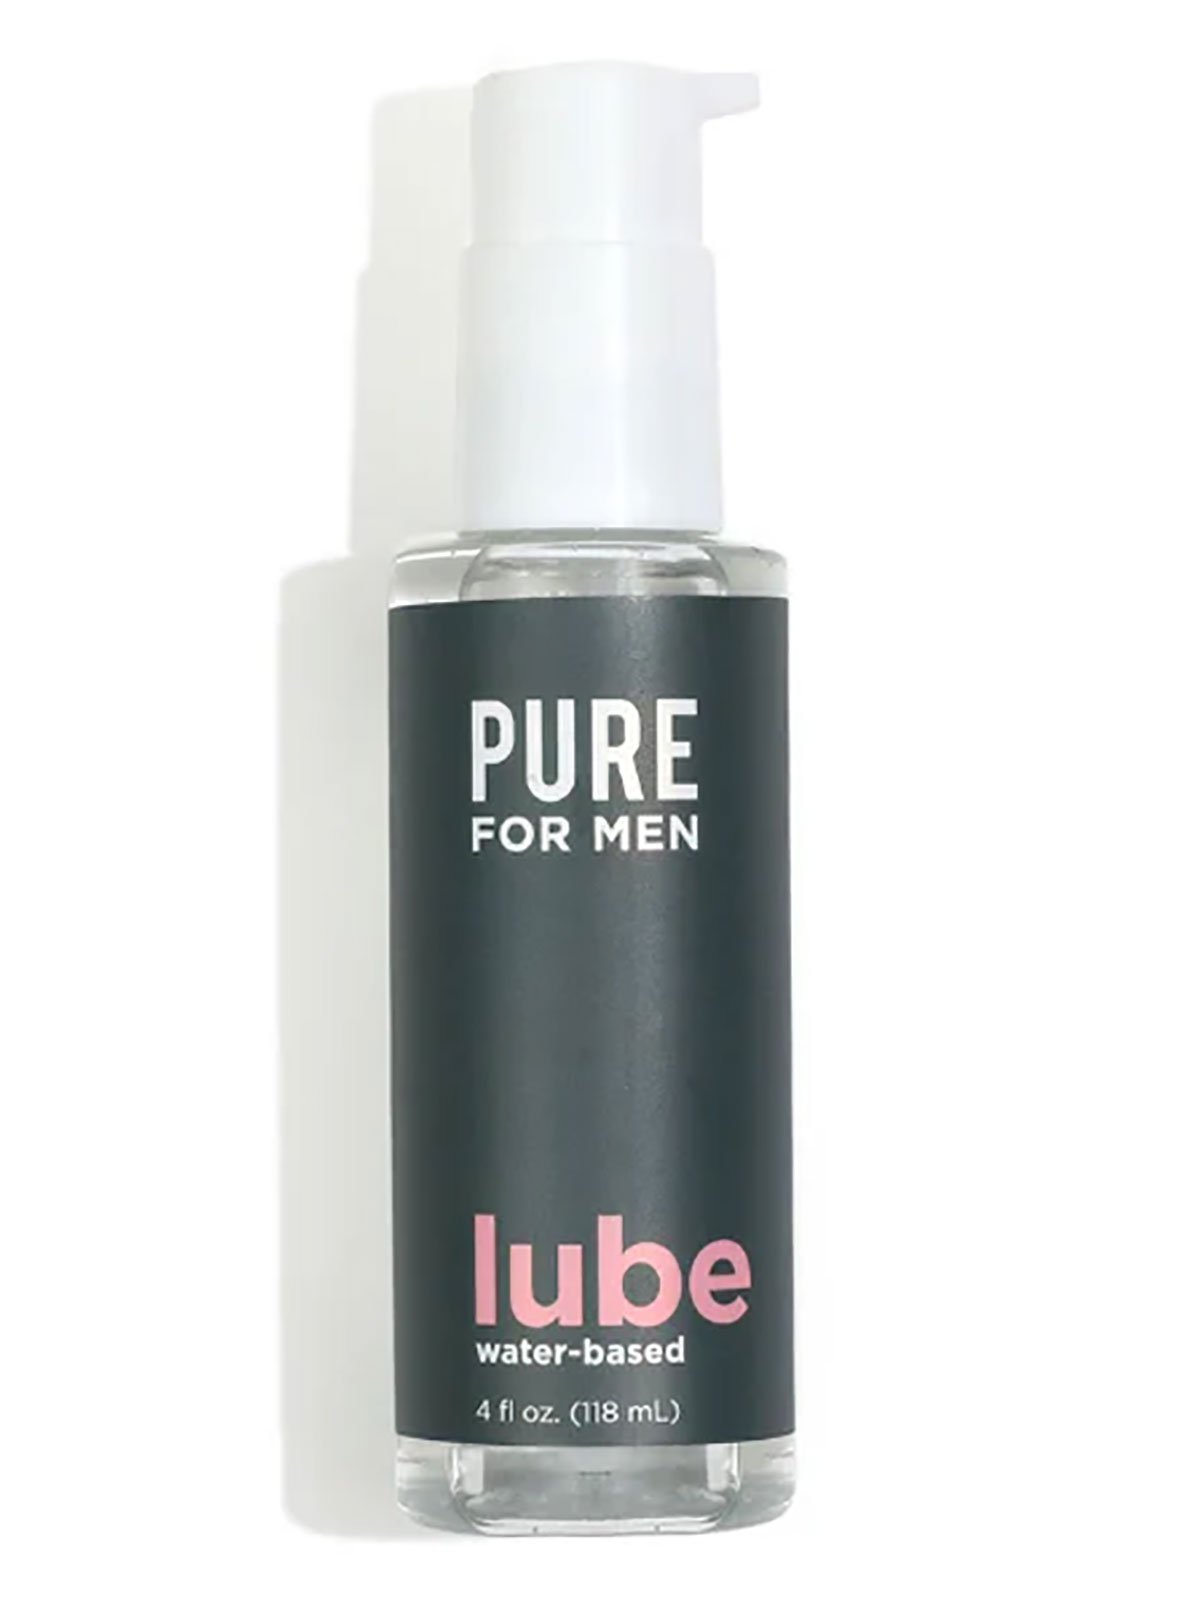 Water-based Lube | 118 ml / 4 oz